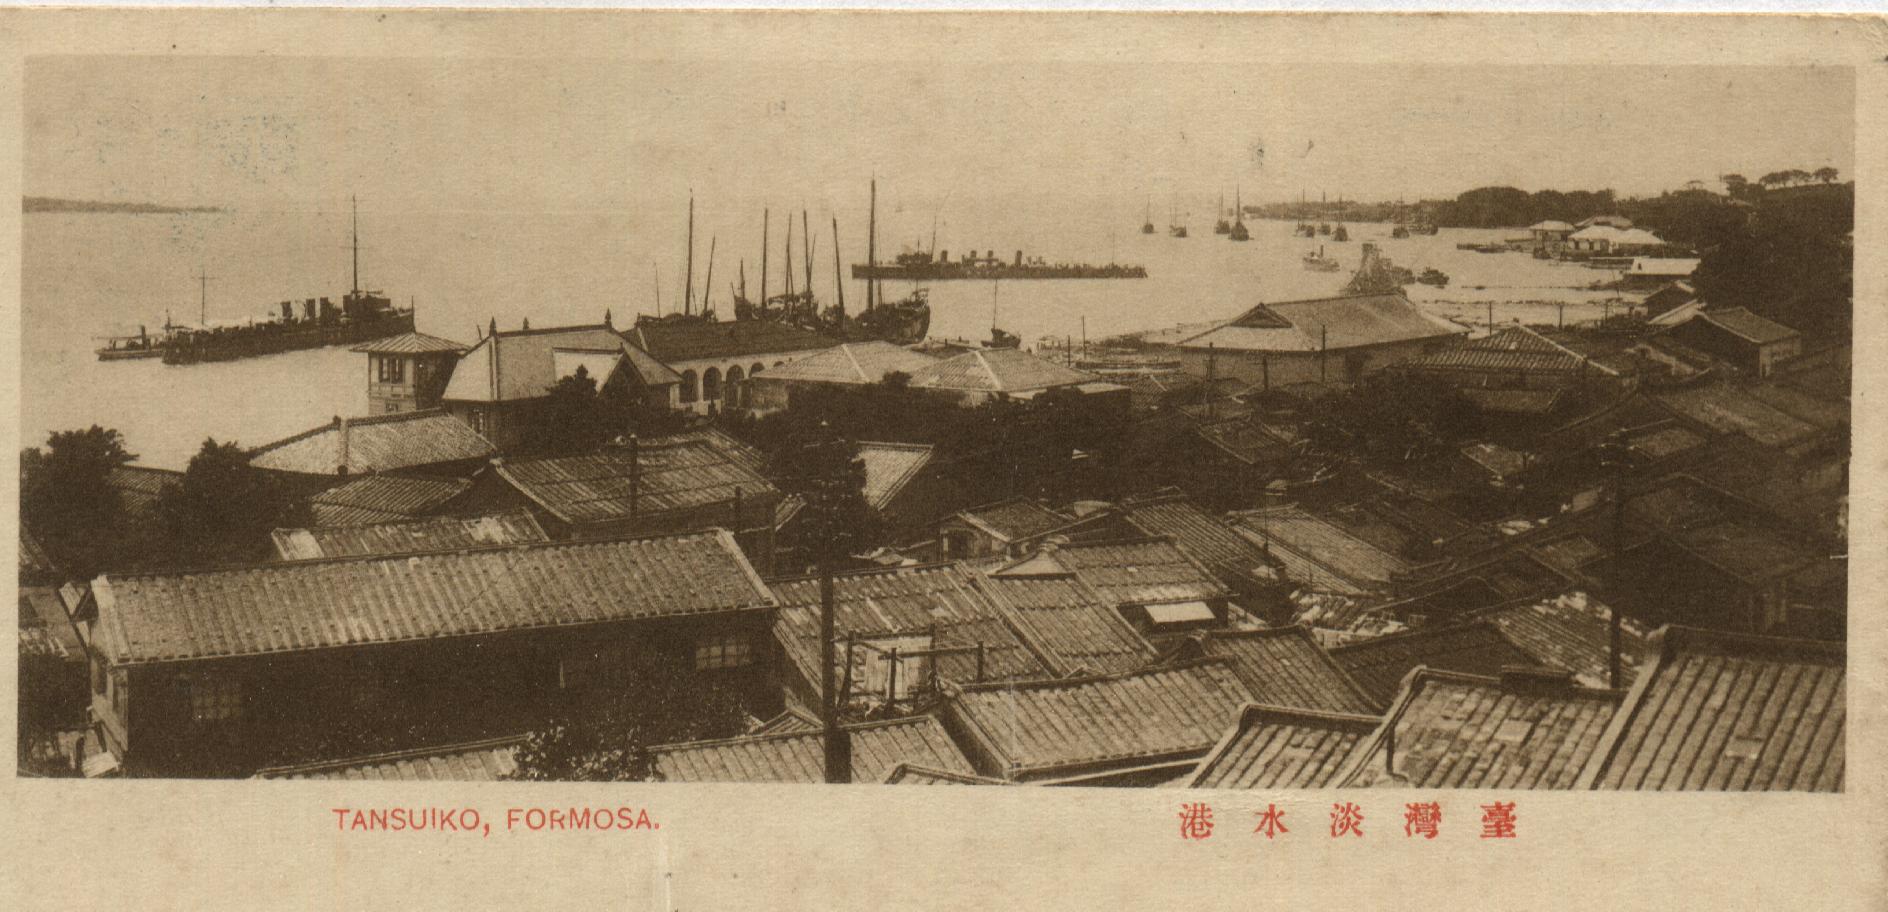  日治時期風景明信片裡淡水港邊的帆船、輪船與蒸汽船